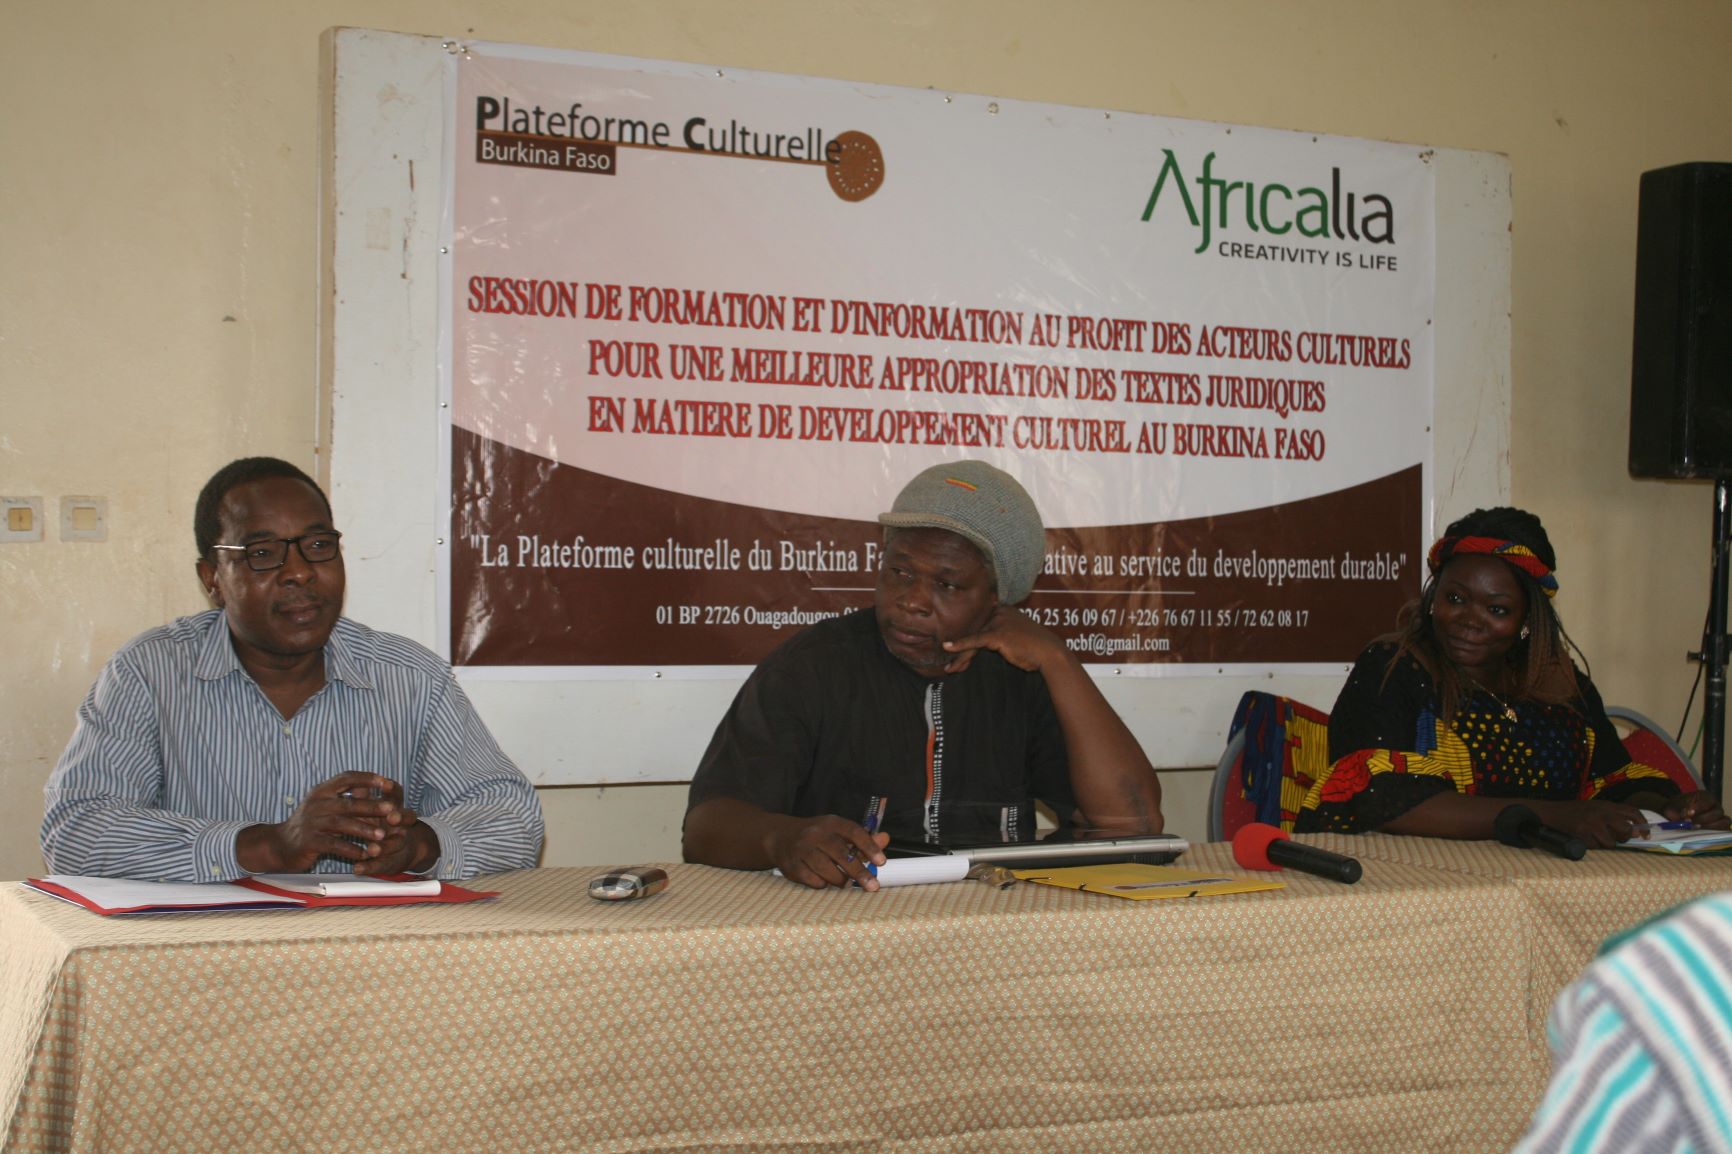  PLATEFORME CULTURELLE DU BURKINA FASO: Des acteurs culturels reçoivent une session d’information et de Formation